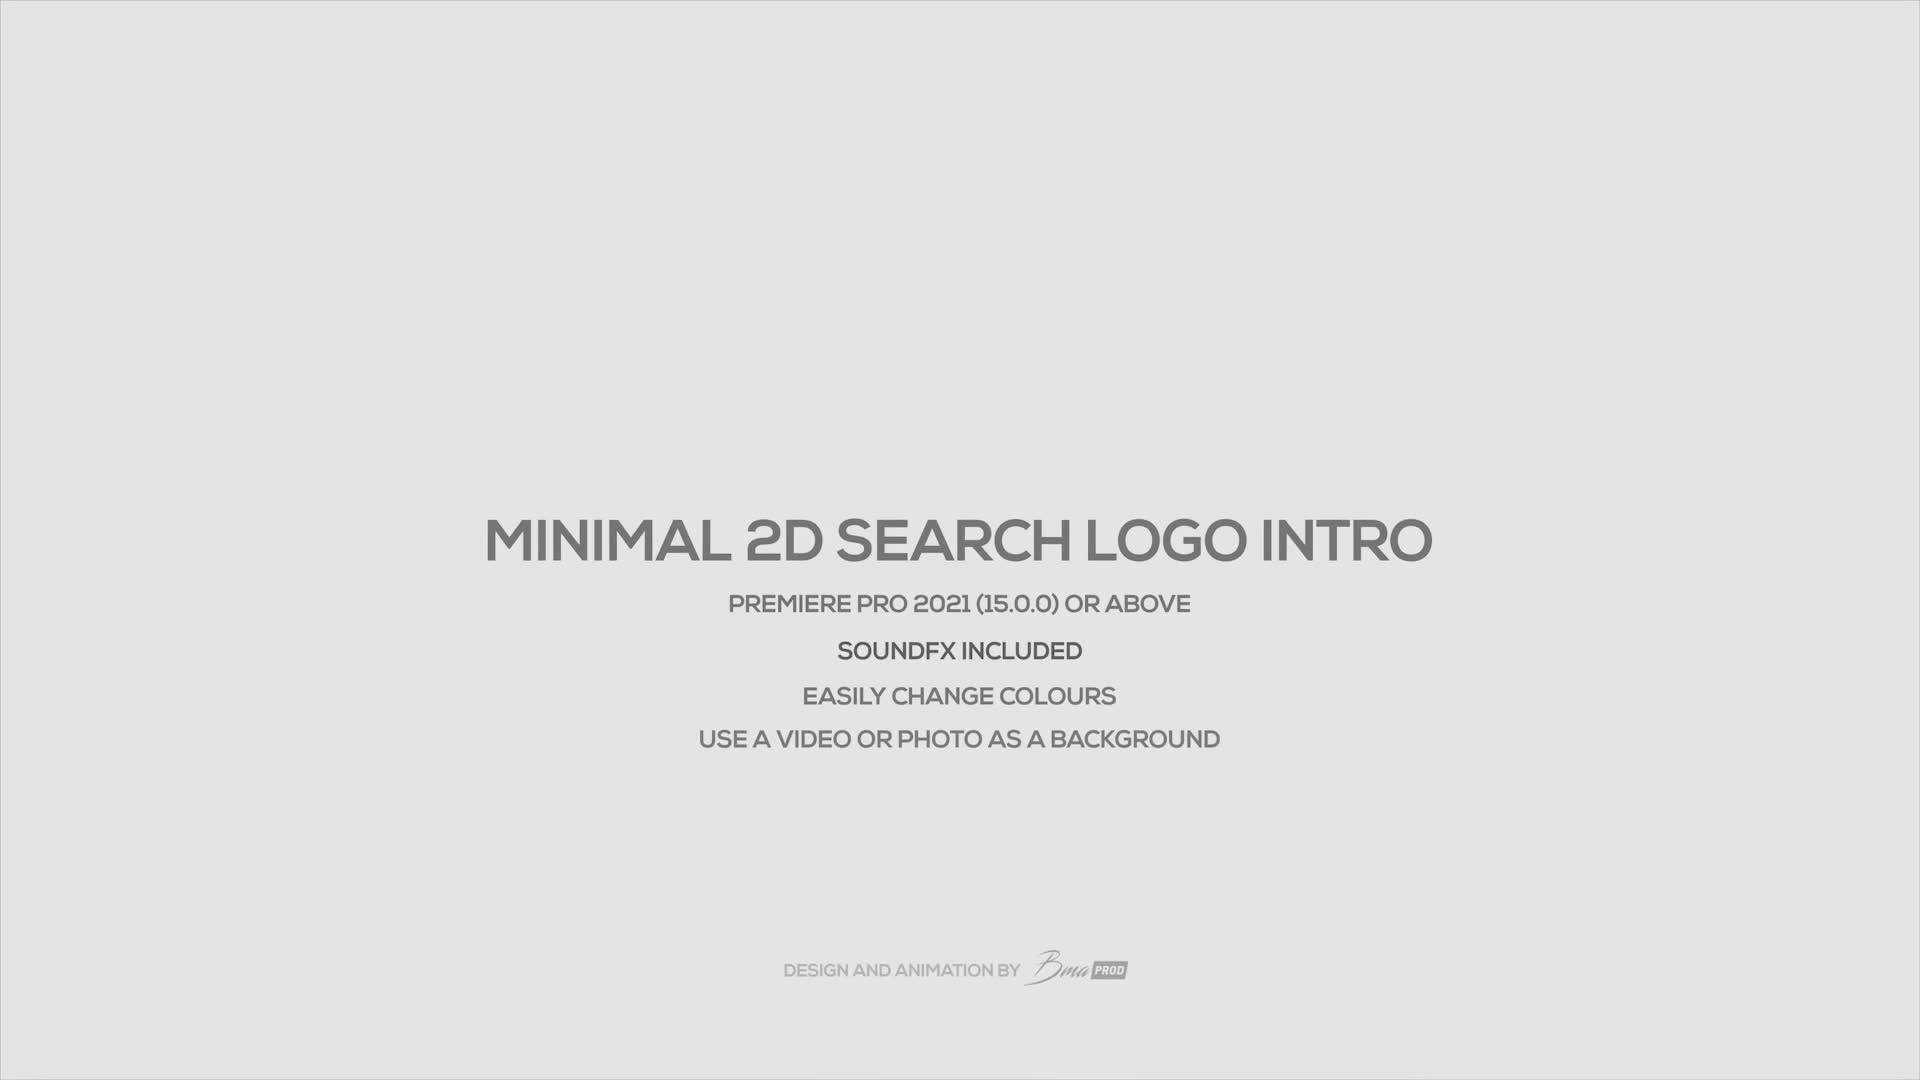 Minimal 2D Search Logo Intro Videohive 31482383 Premiere Pro Image 1